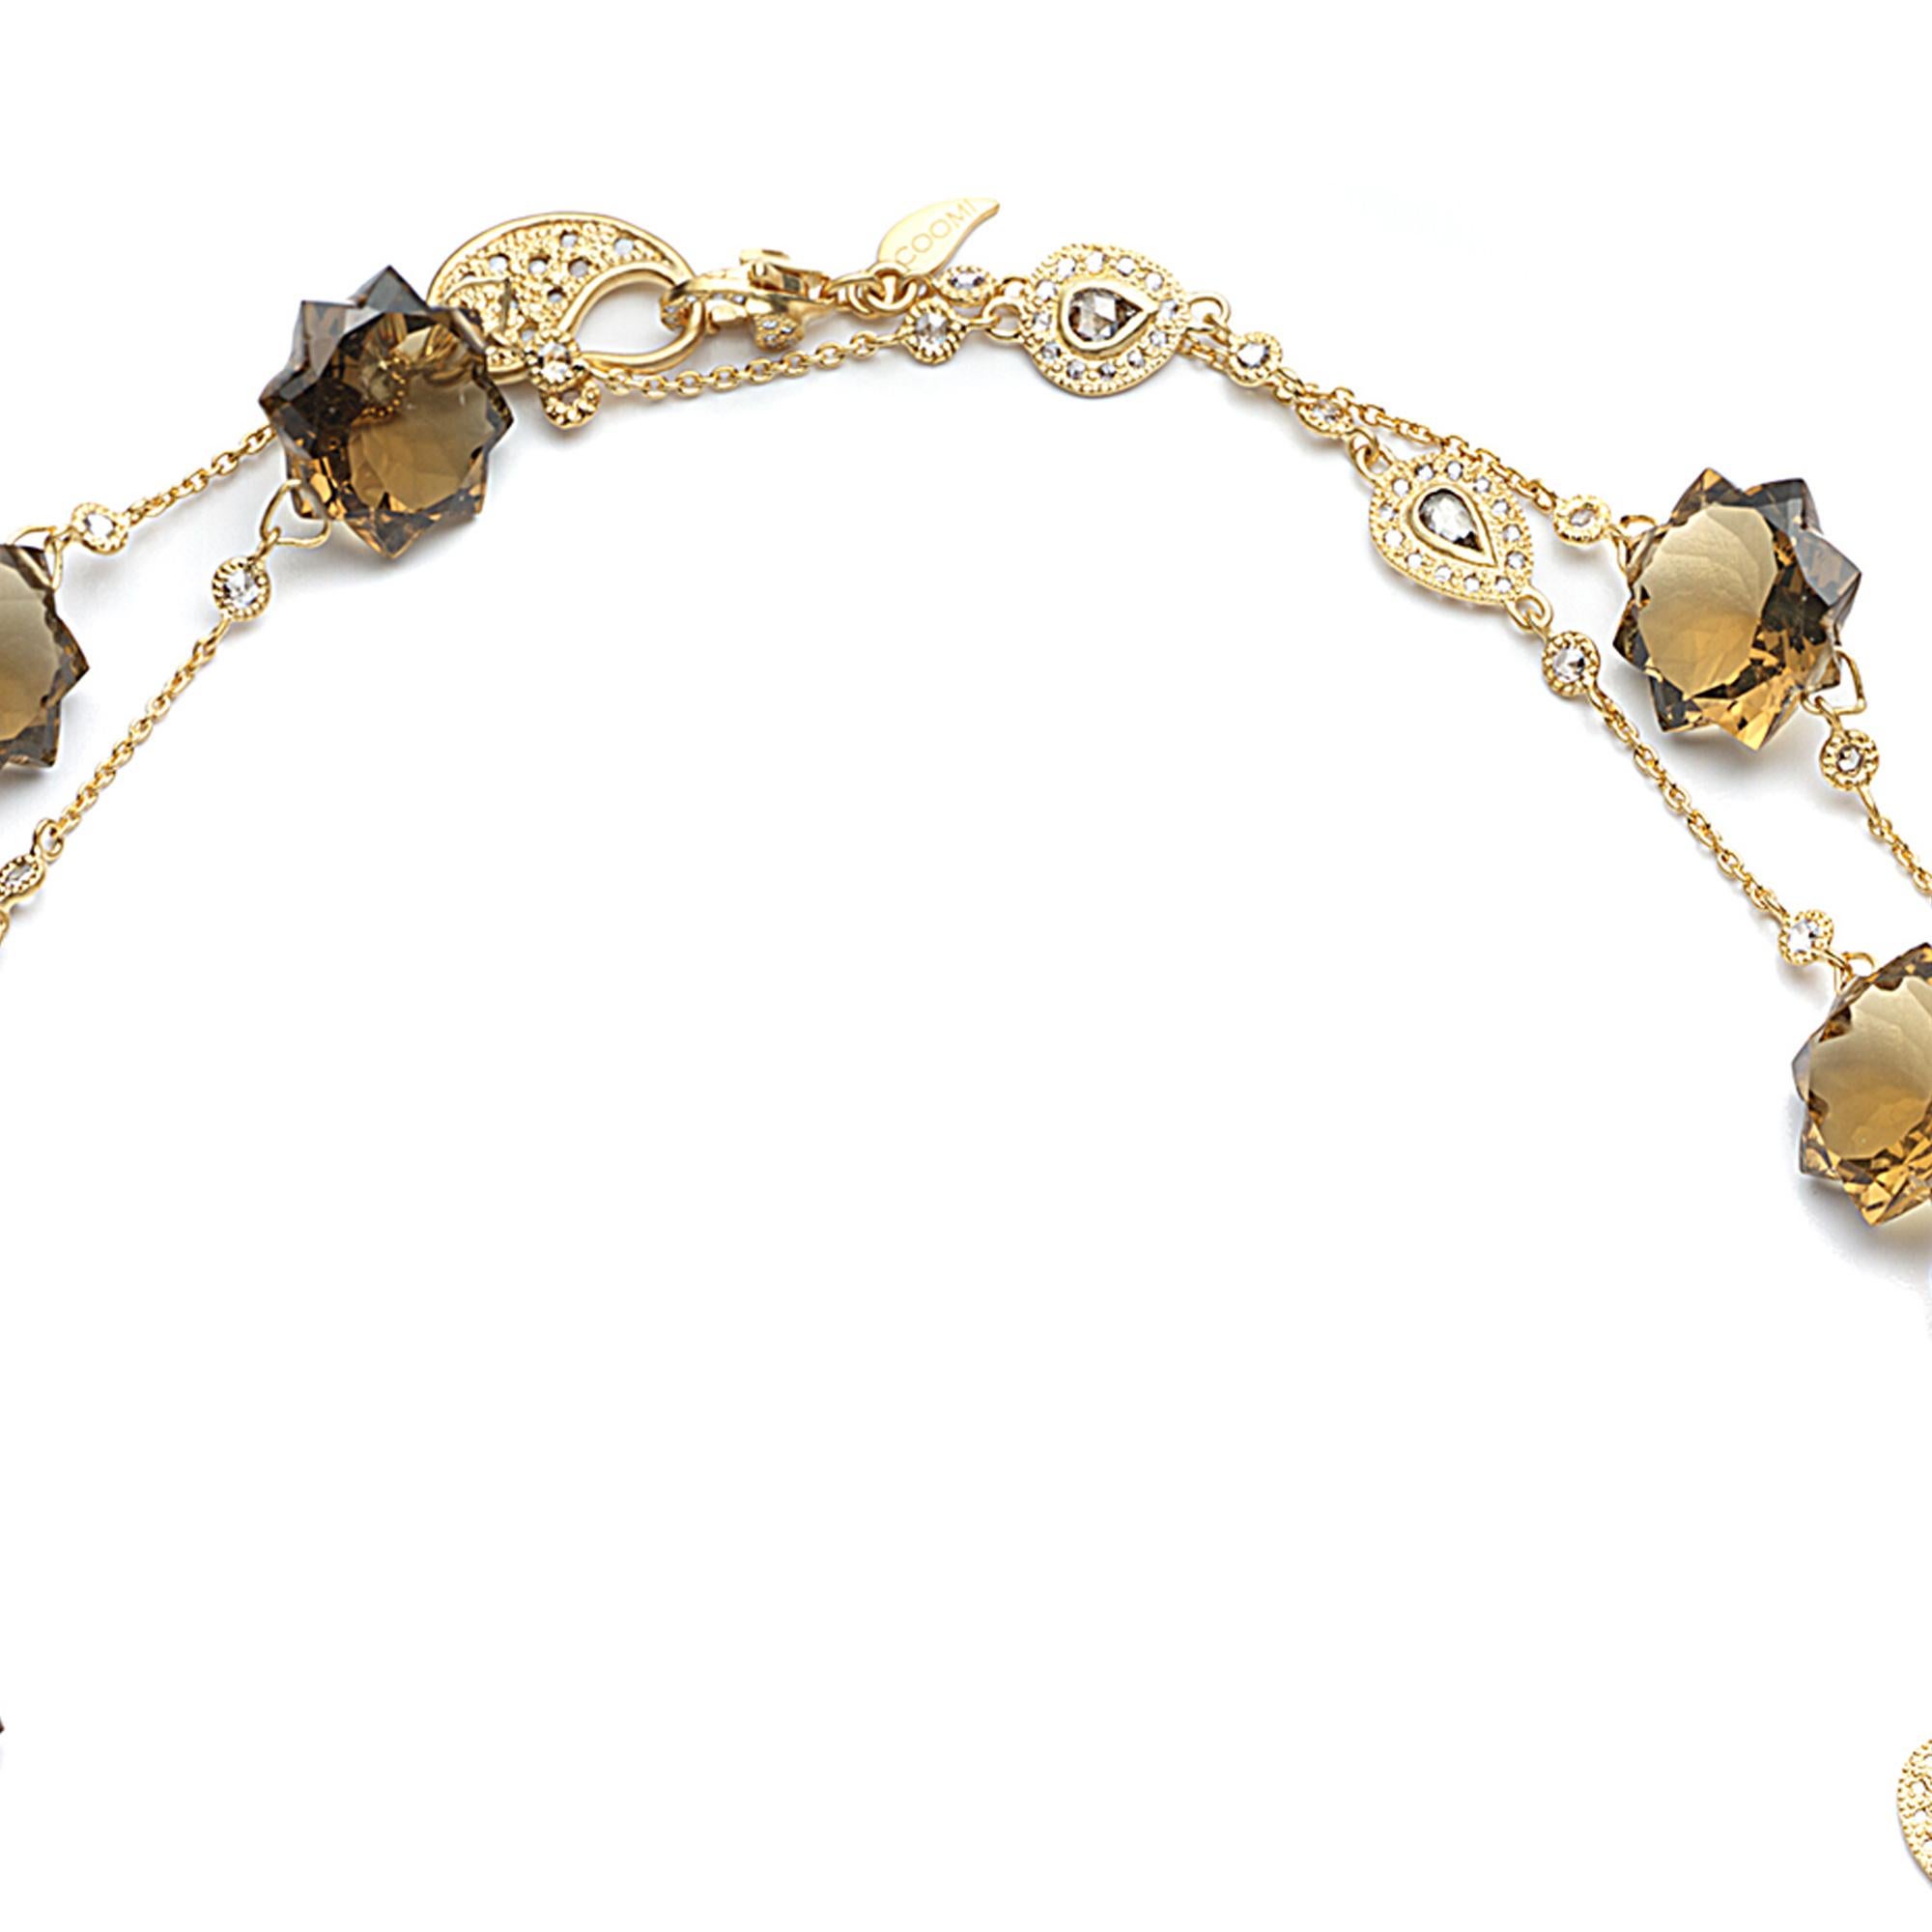 Collier Sagrada Kaleidoscope en or jaune 20 carats avec quartz cognac 88,90 carats et diamants 4,87 carats. Ce collier contient 11 quartz cognac taillés en étoile et fait partie de la collection Sagrada Kaleidoscope de COOMI. 